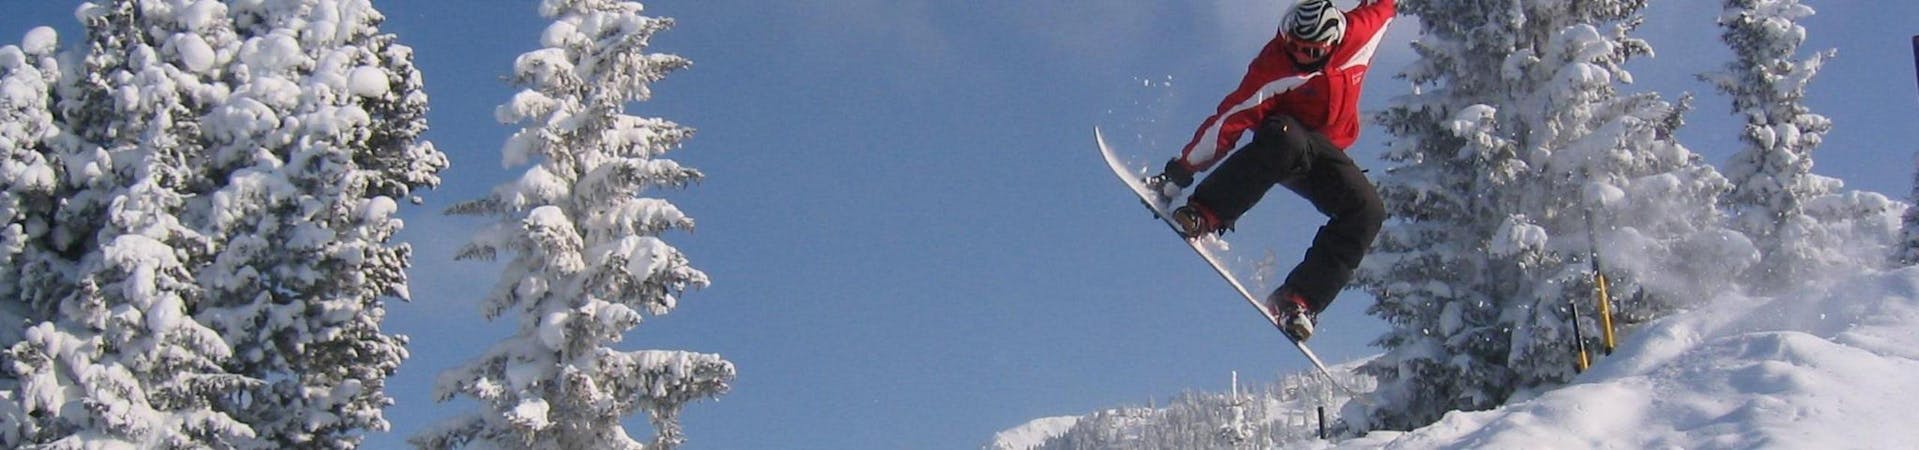 Lezioni di Snowboard a partire da 15 anni principianti assoluti.